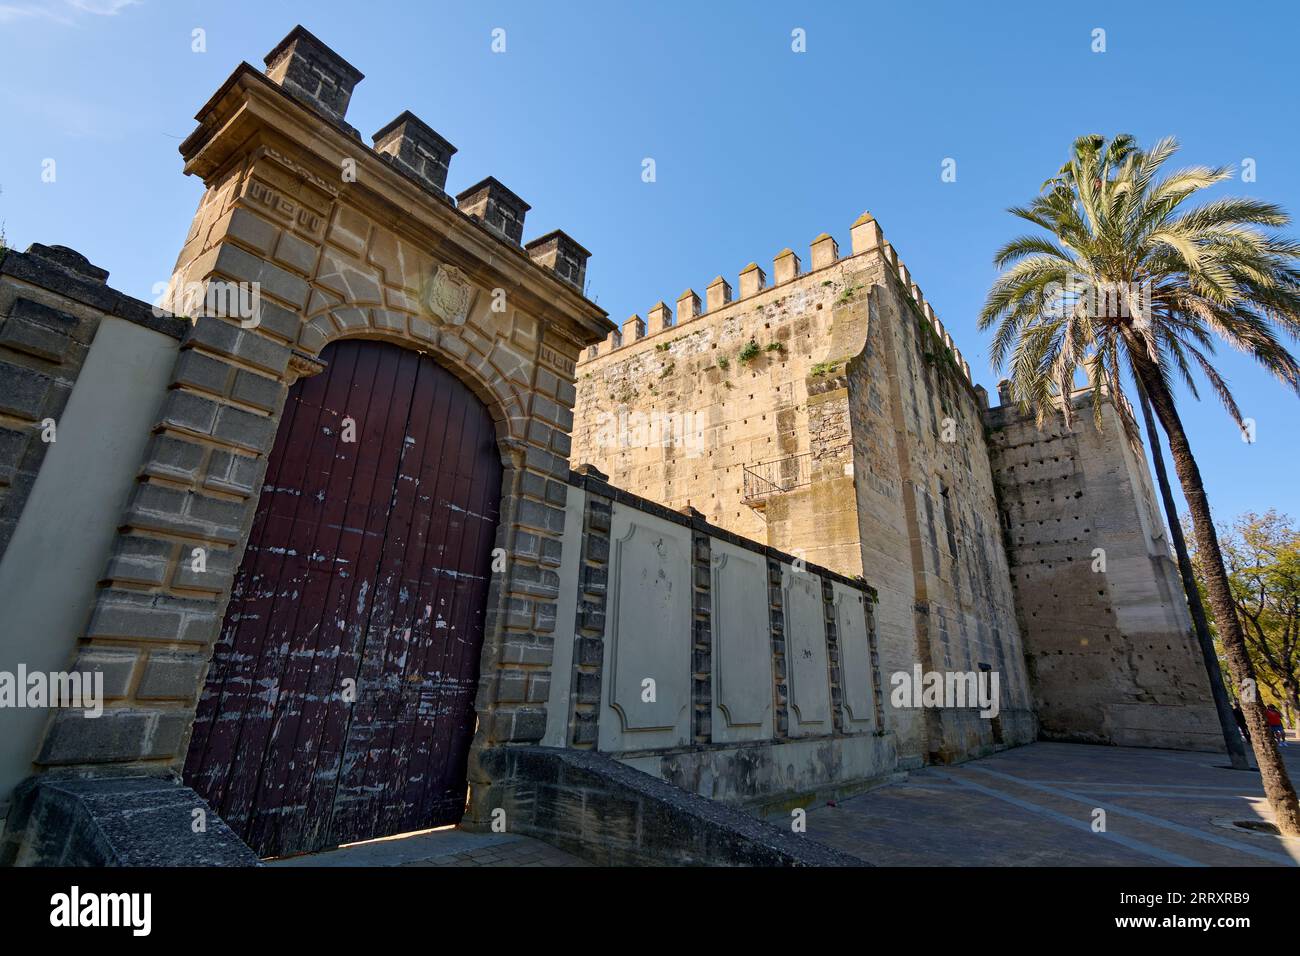 Vista della fortezza dell'Alcazar de Jerez dell'XI secolo di origine islamica nella città di Jerez de la Frontera, Costa de la Luz, provincia di Cadice, A. Foto Stock